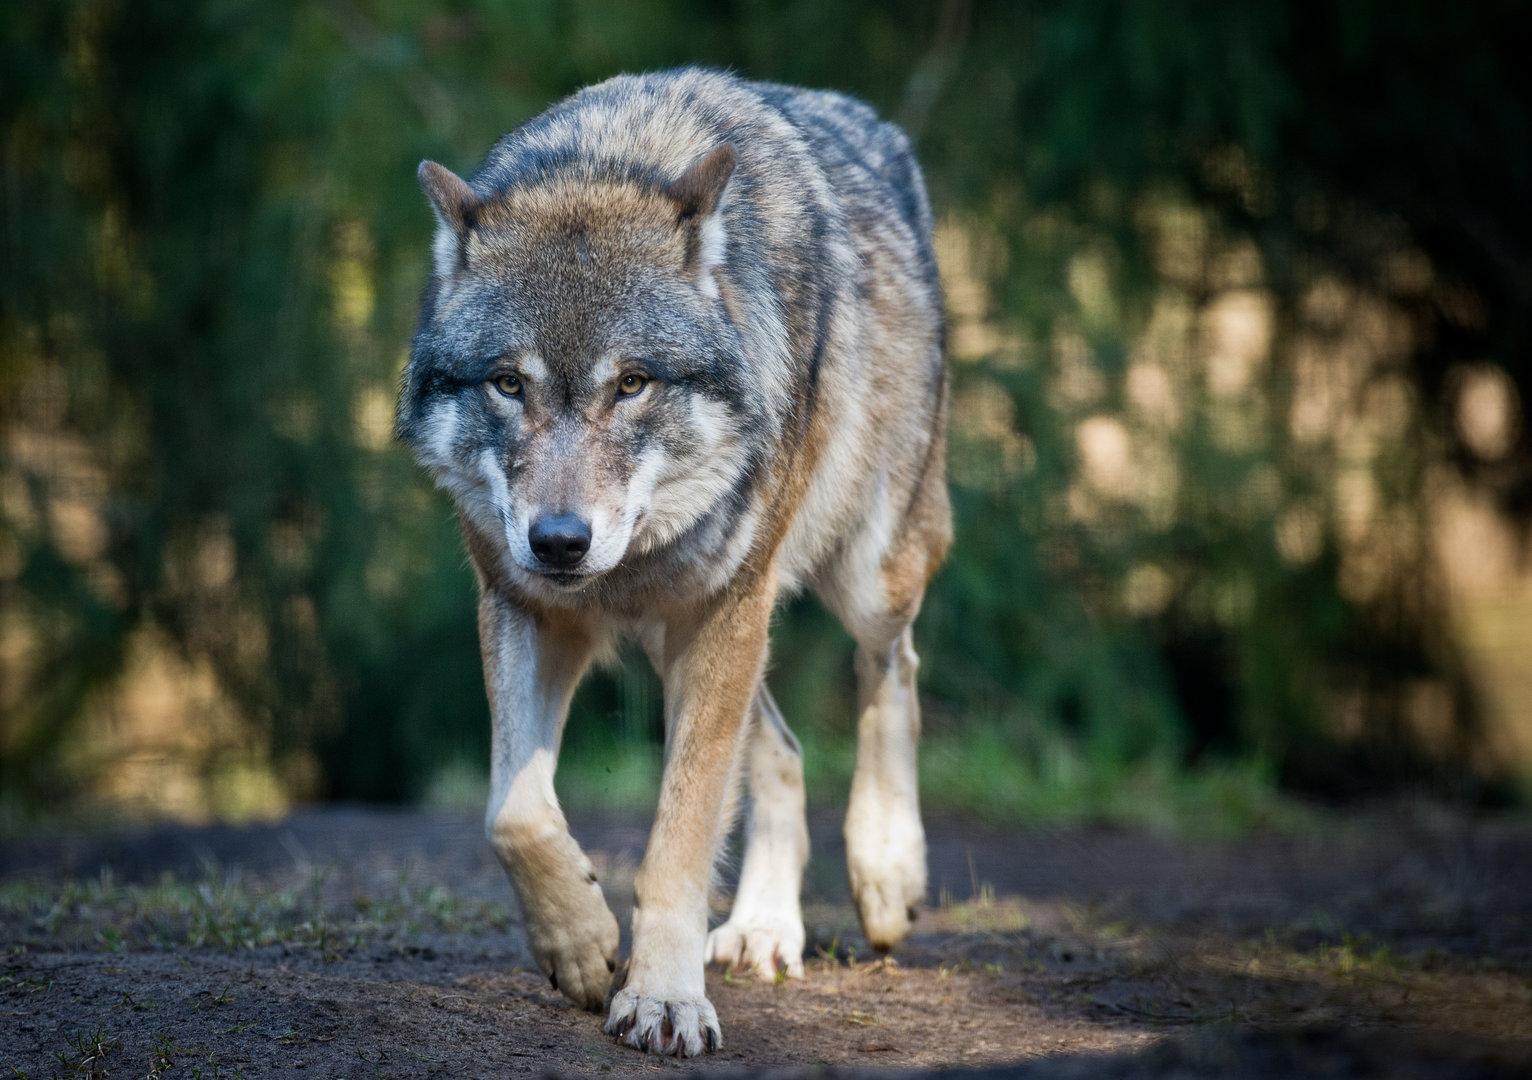 wolf störte die reitstunde: problemtier von ziegenstall verjagt